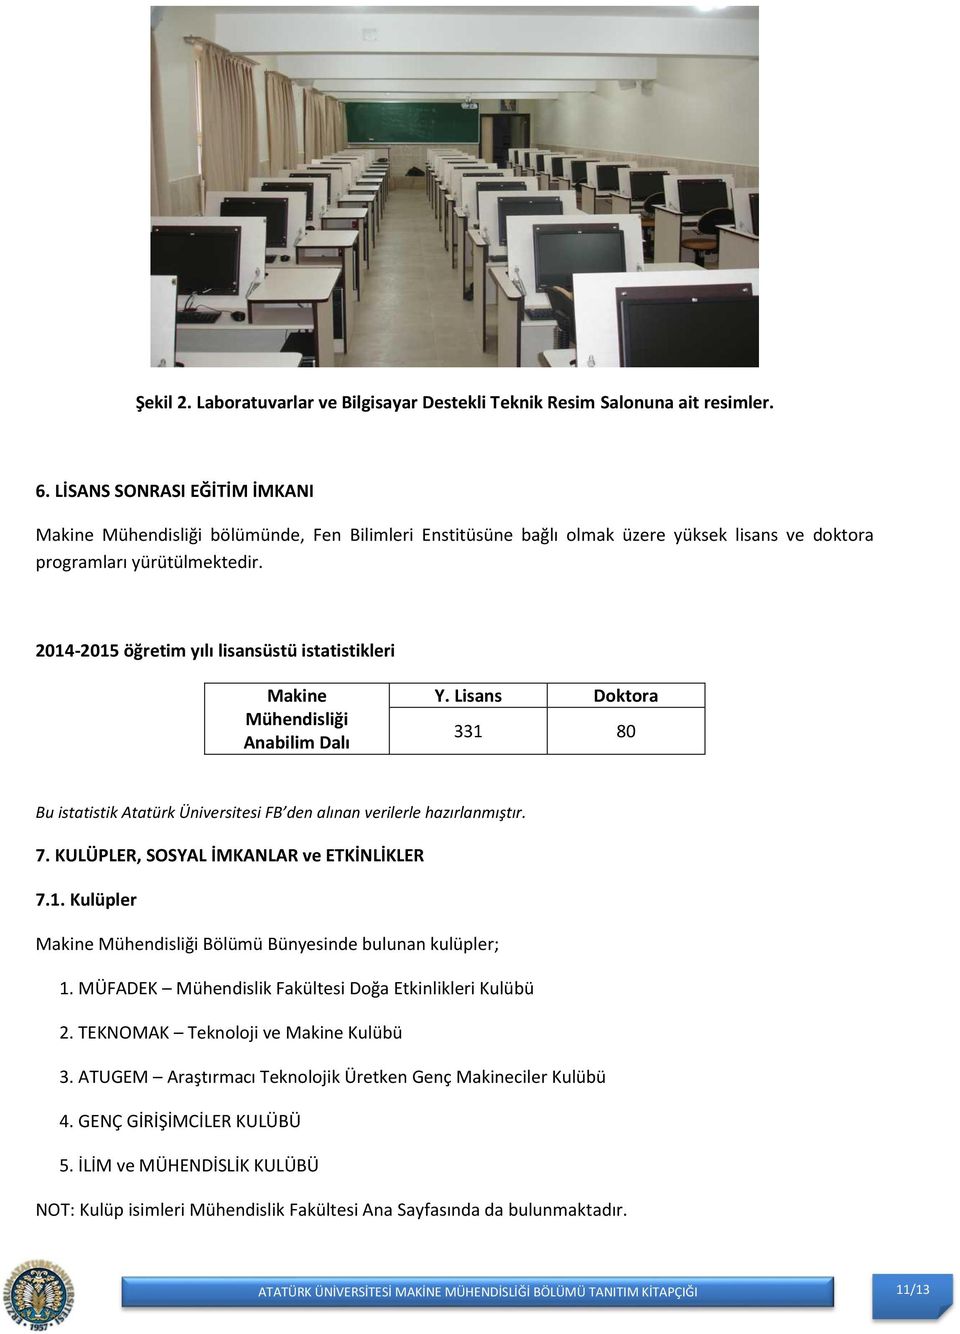 2014-2015 öğretim yılı lisansüstü istatistikleri Makine Mühendisliği Anabilim Dalı Y. Lisans Doktora 331 80 Bu istatistik Atatürk Üniversitesi FB den alınan verilerle hazırlanmıştır. 7.